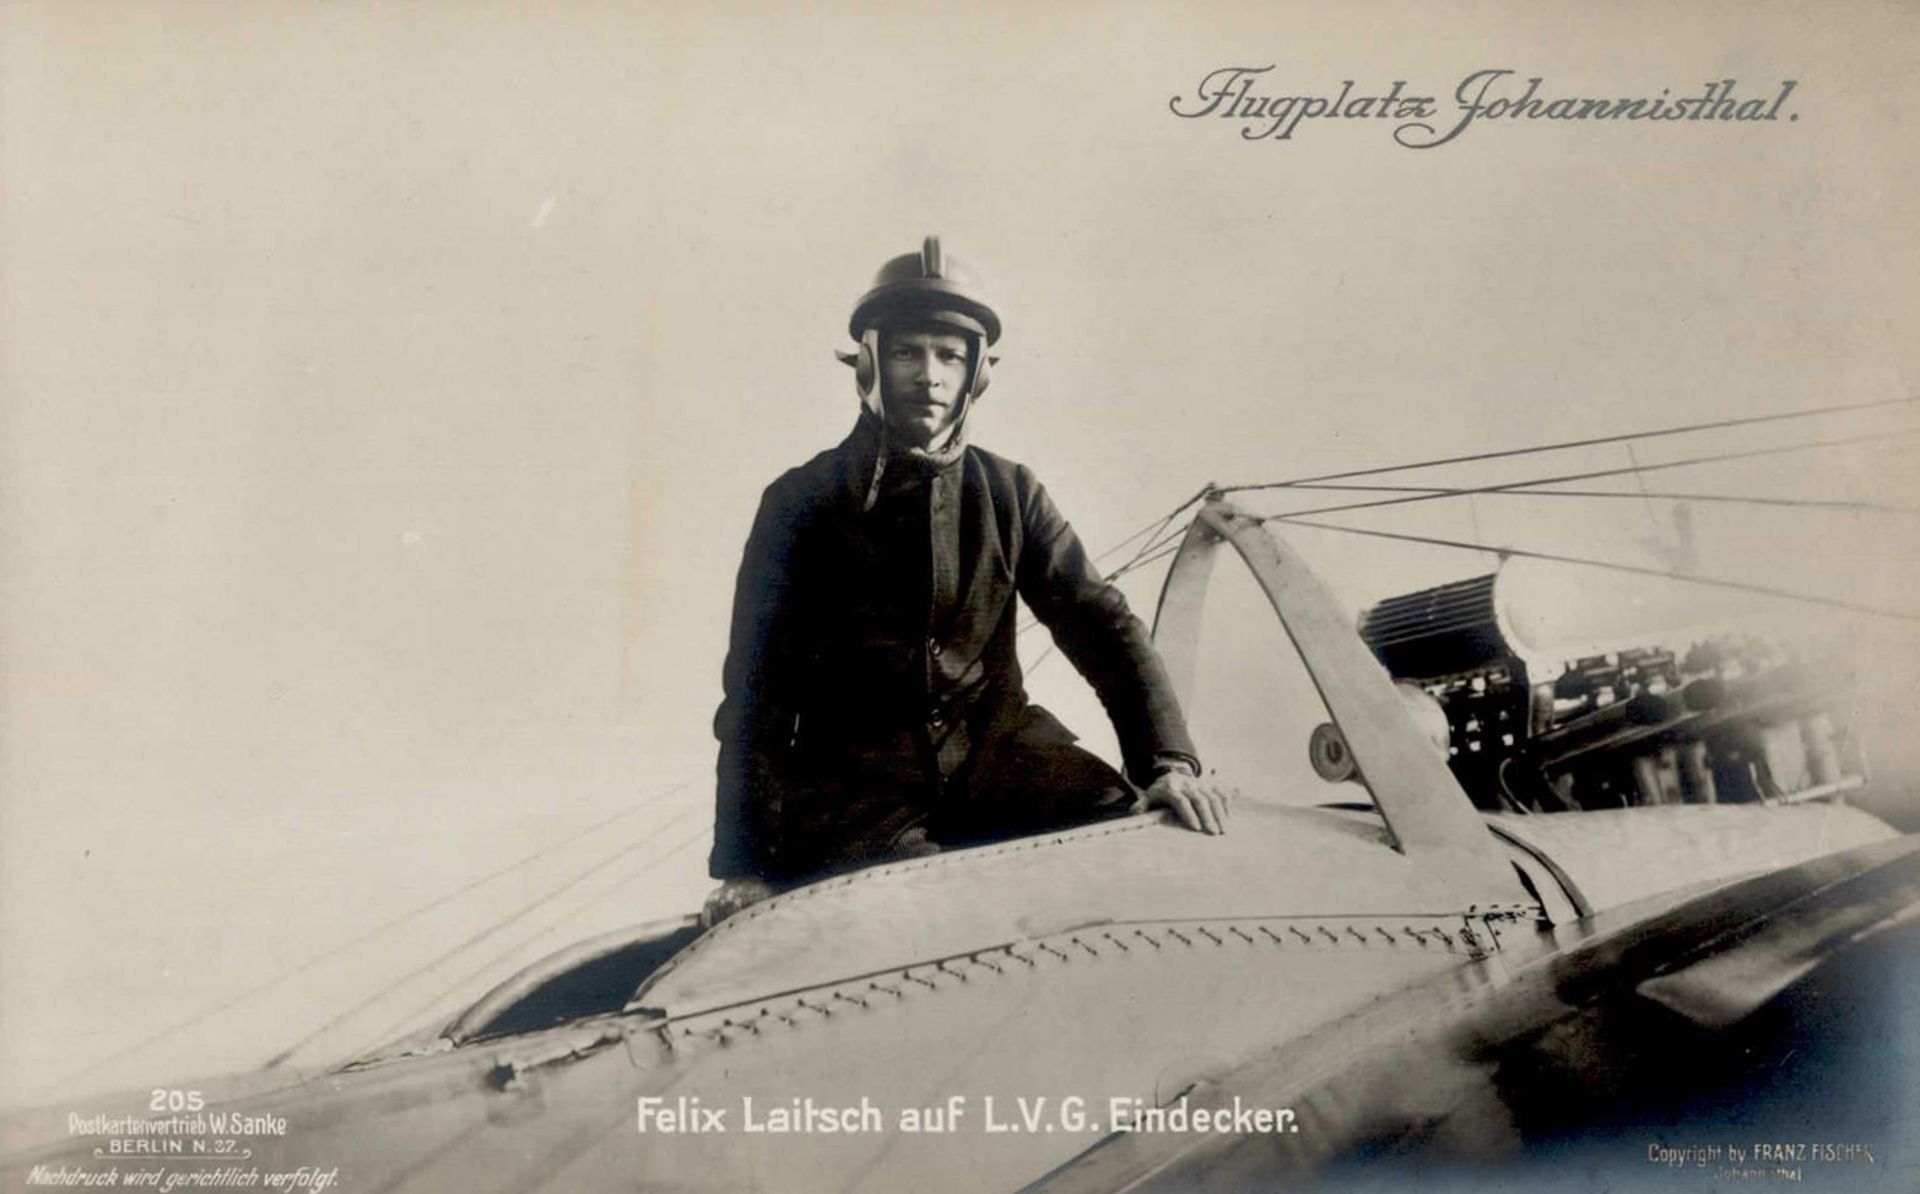 Sanke Piloten Johannisthal 205 Laitsch, Felix auf L.V.G. Eindecker I-II